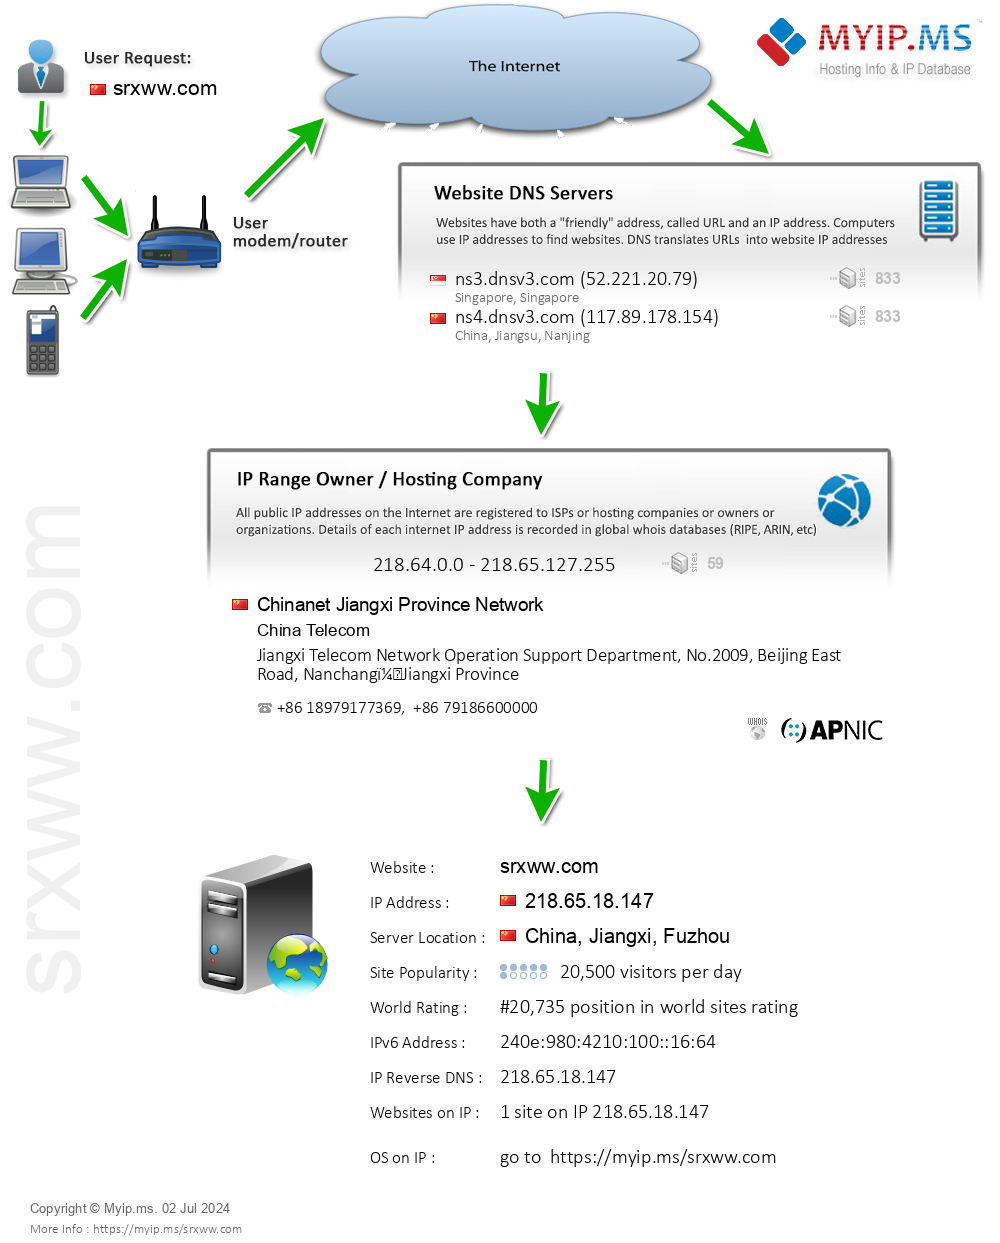 Srxww.com - Website Hosting Visual IP Diagram